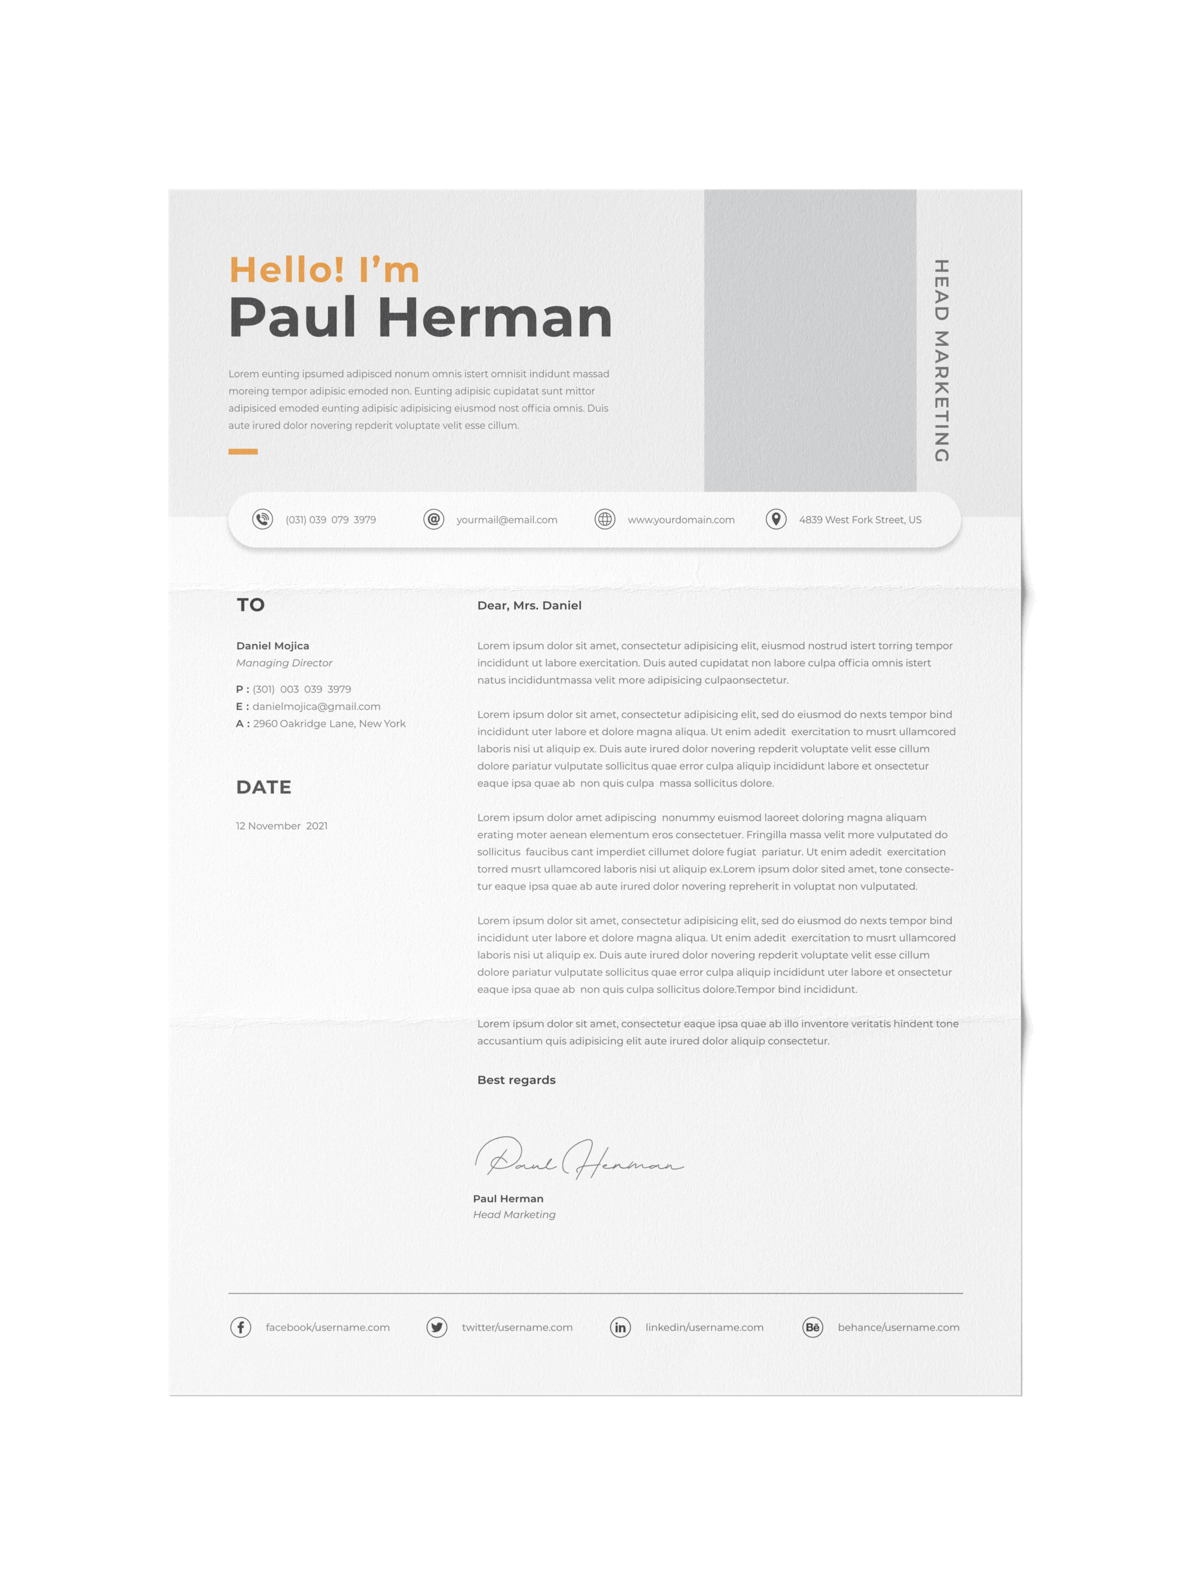 CV #154 Paul Herman